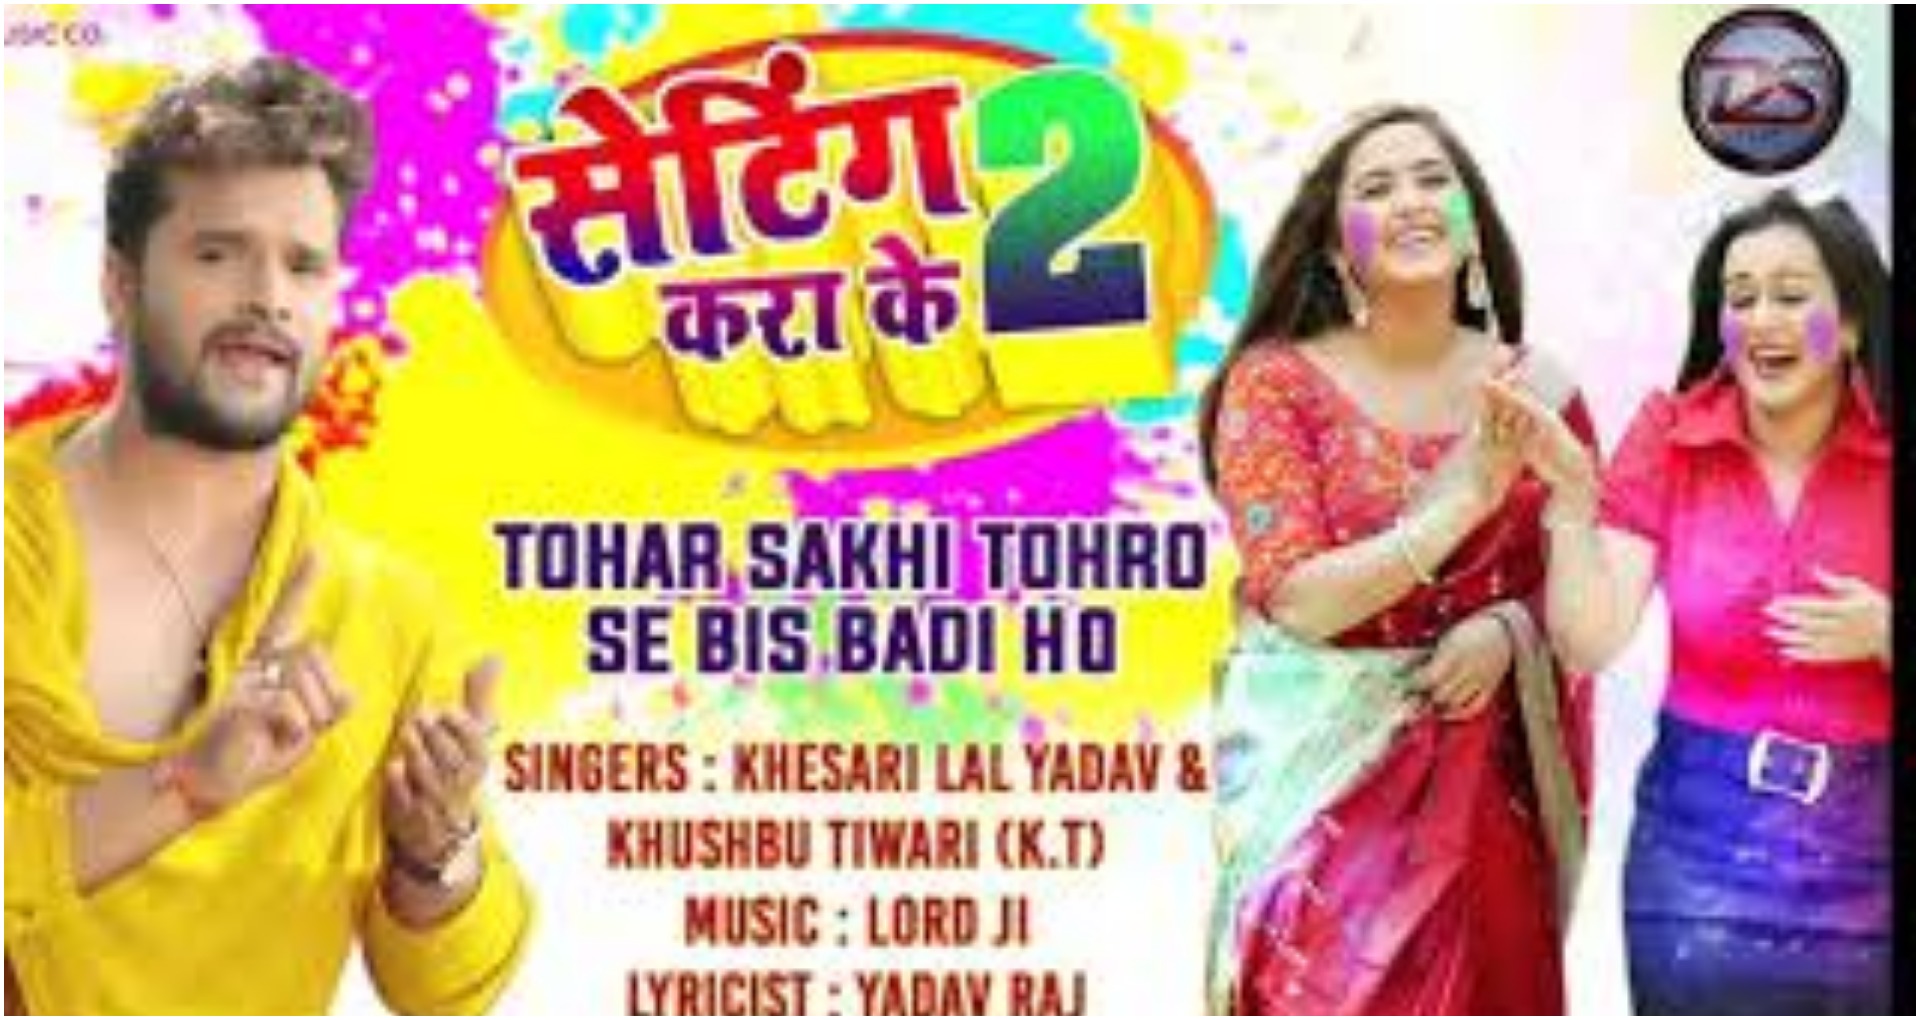 New Bhojpuri Songs 2020: खेसारी लाल यादव और खुश्बू तिवारी का गाना ‘सेटिंग कर के 2’ हुआ वायरल